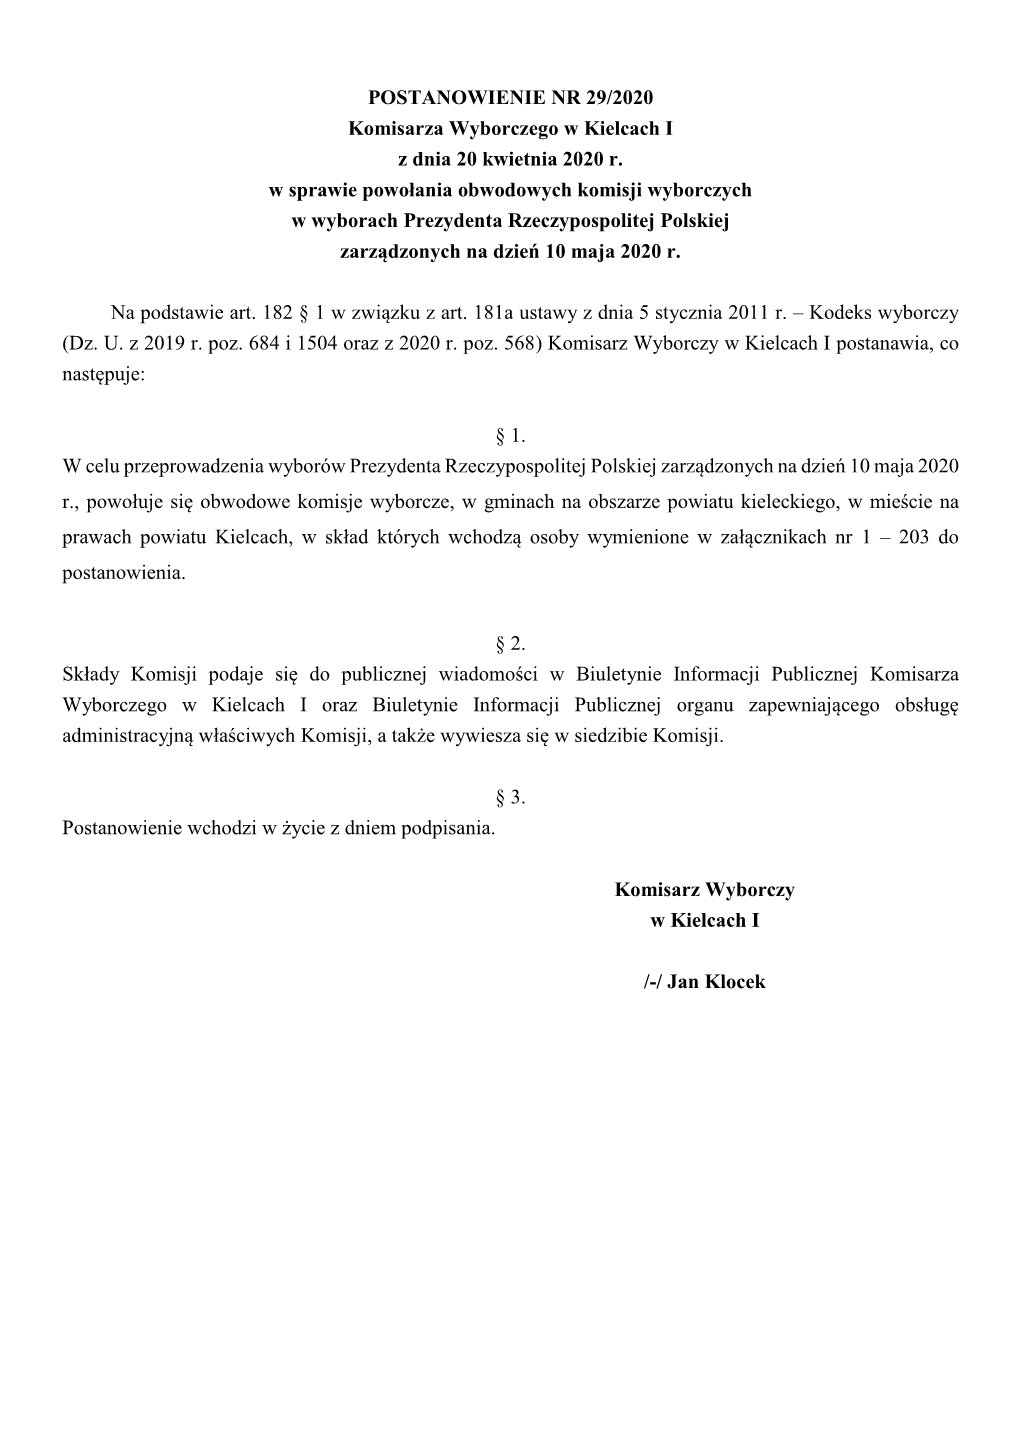 POSTANOWIENIE NR 29/2020 Komisarza Wyborczego W Kielcach I Z Dnia 20 Kwietnia 2020 R